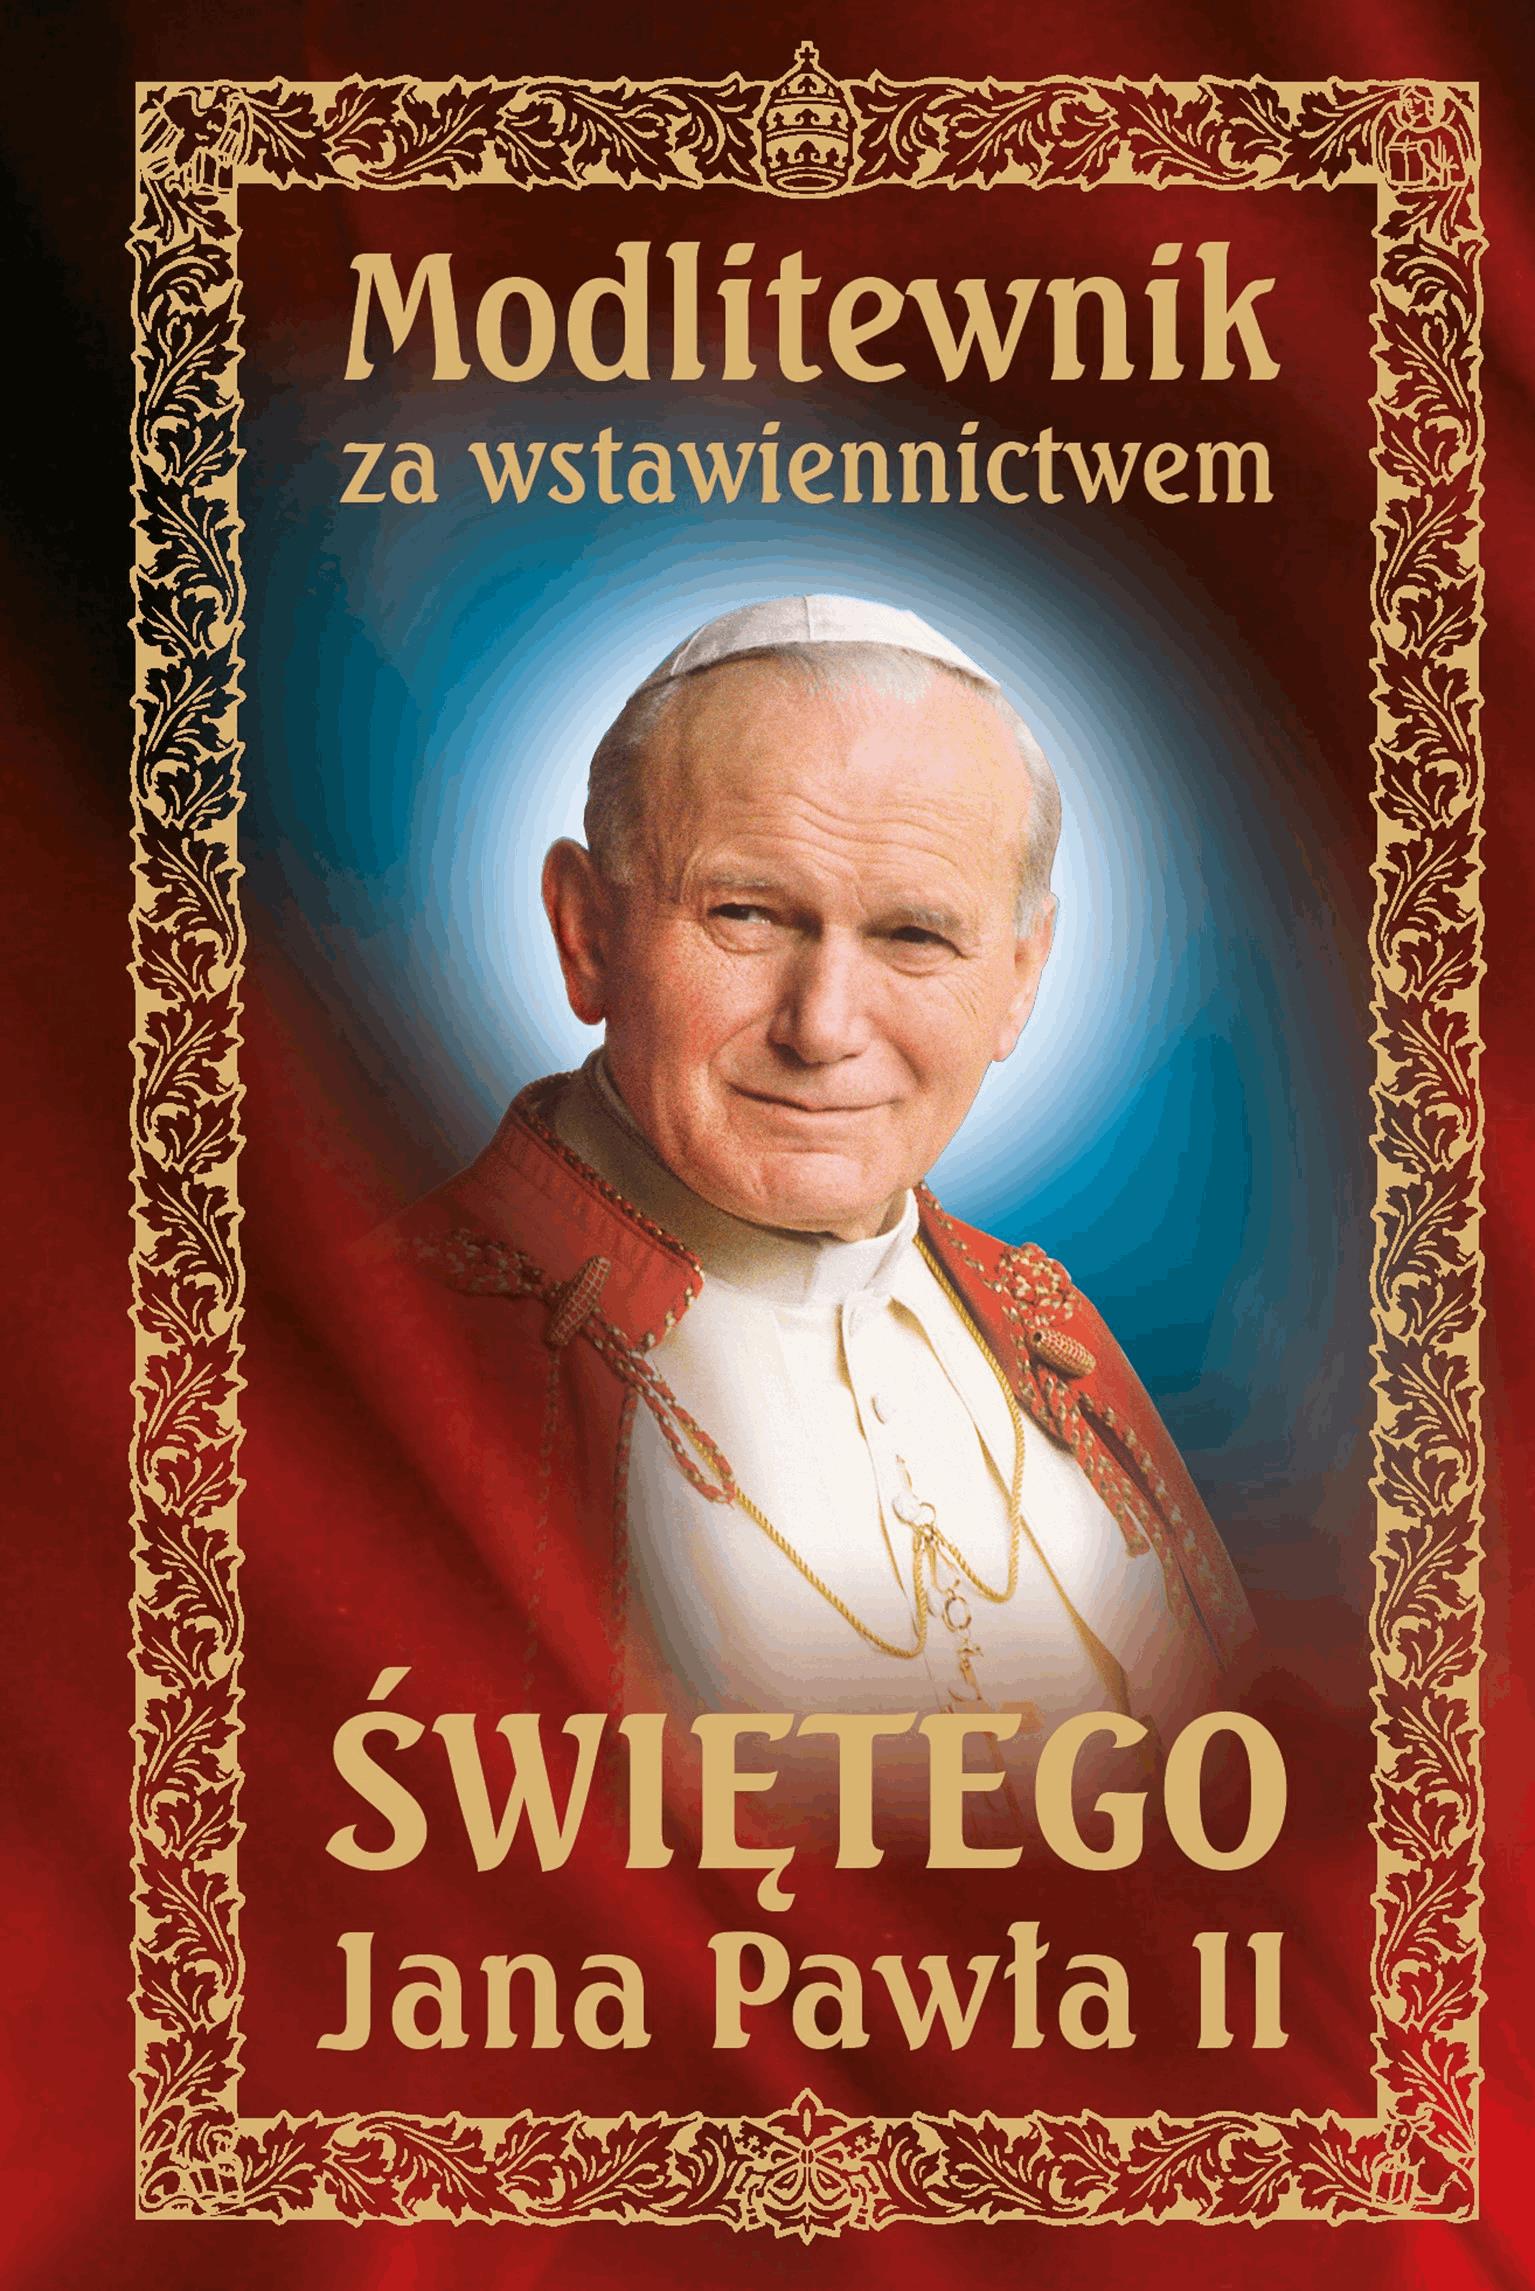 Okładka:Modlitewnik za wstawiennictwem Świętego Jana Pawła II 